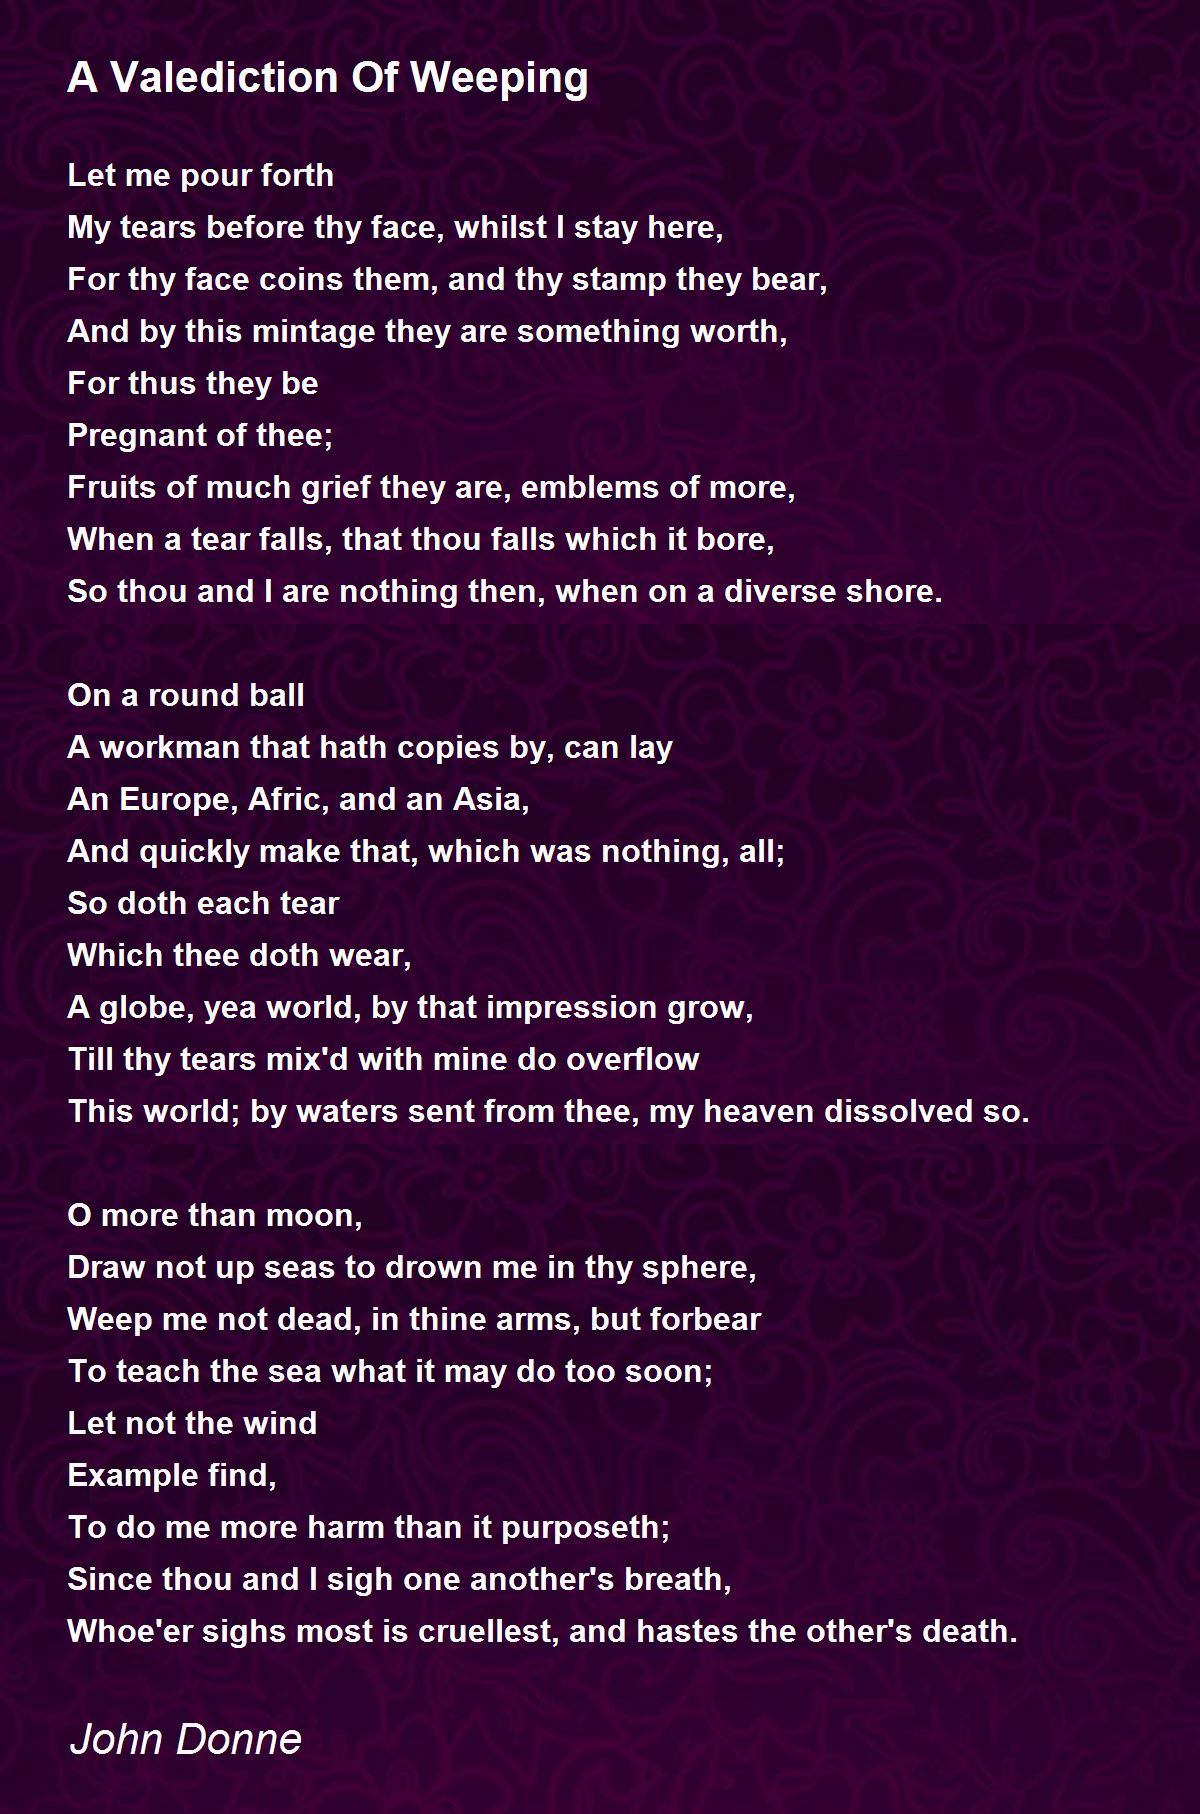 A Valediction Of Weeping Poem by John Donne - Poem Hunter